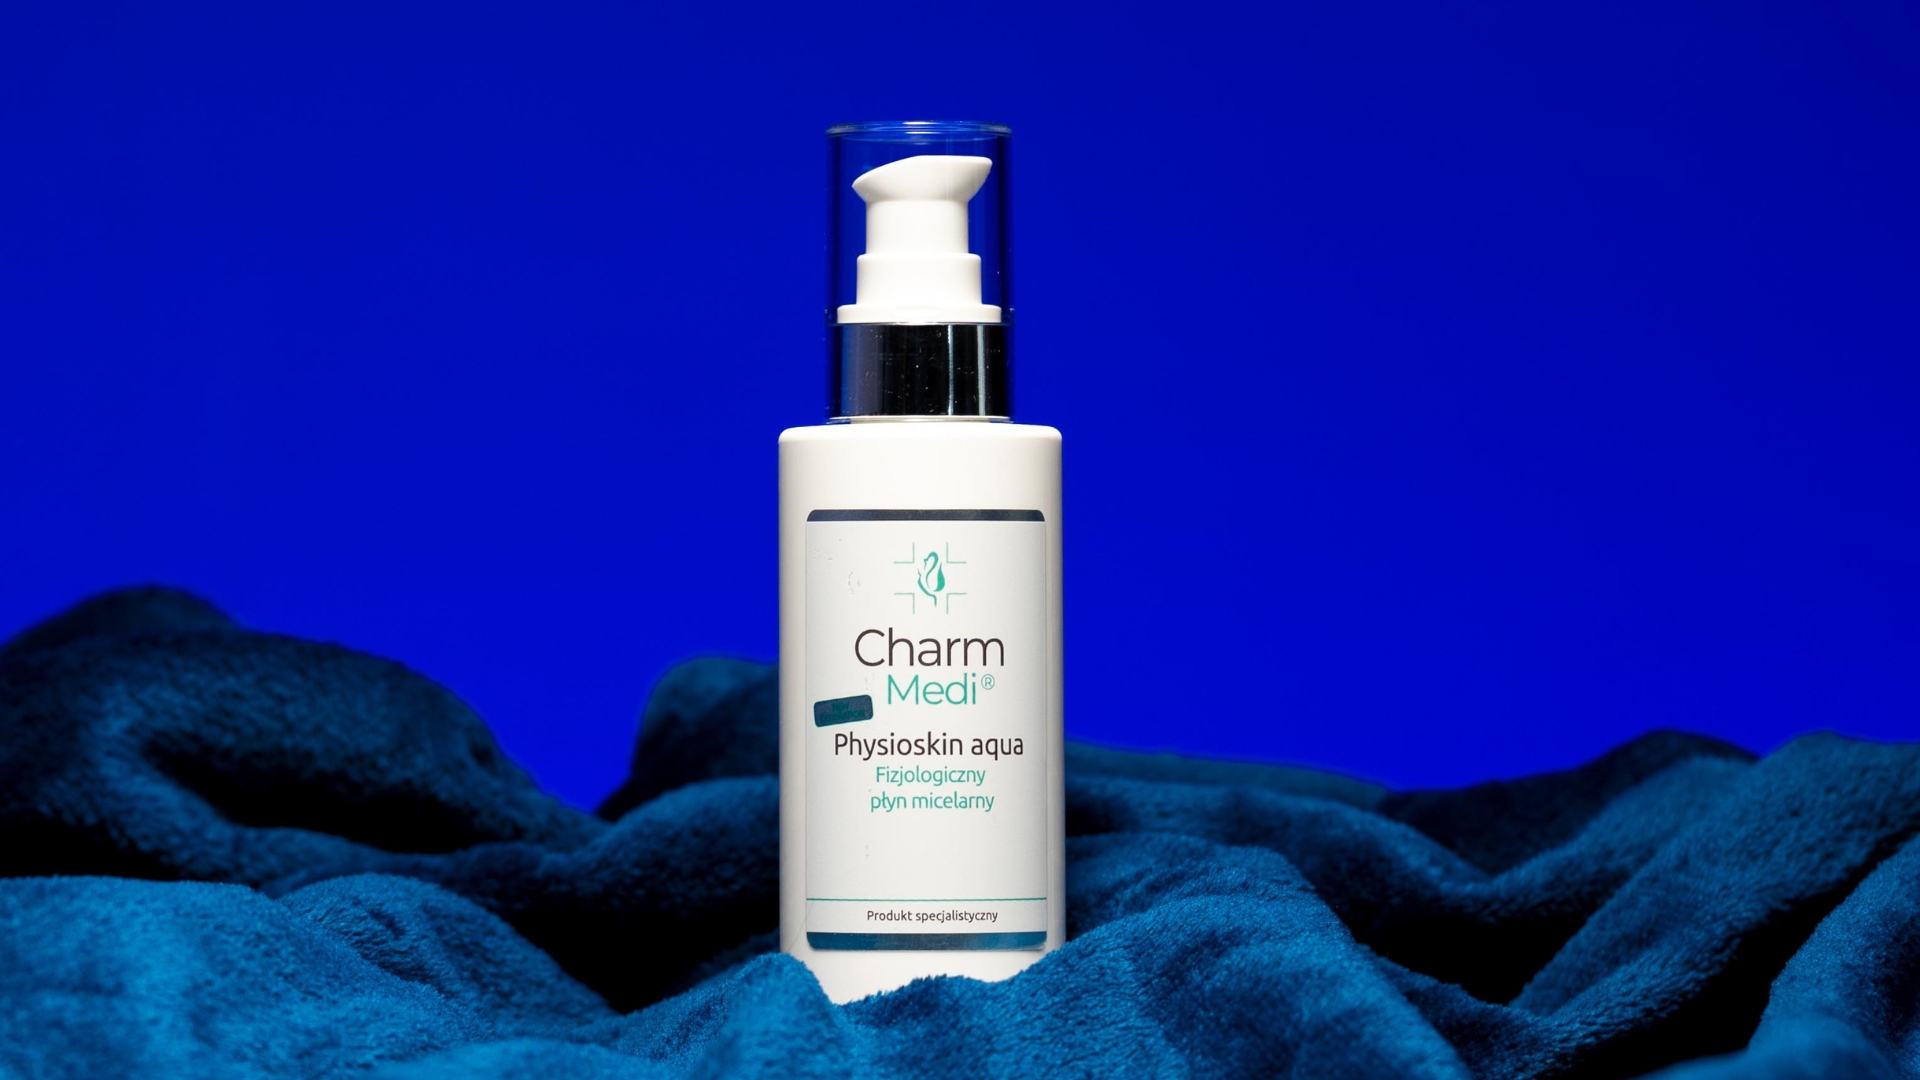 CharmMedi – Physioskin Aqua – fizjologiczny płyn micelarny 150 ml